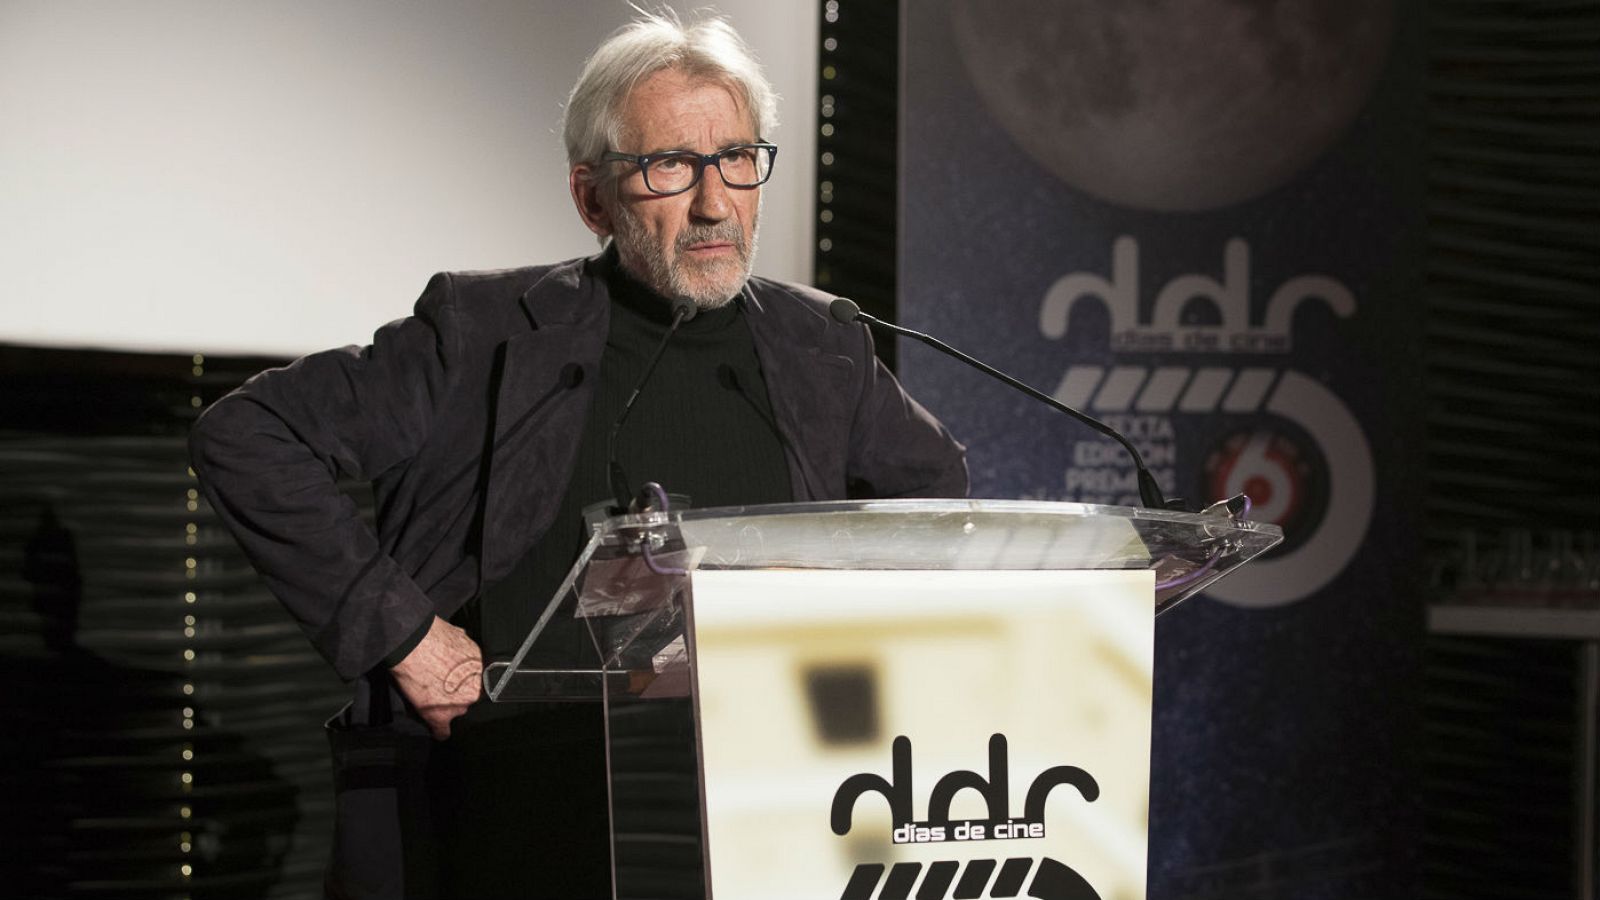 Días de cine: Discurso de José Sacristán al recibir el premio 'Elegidos para la gloria'', de Días de Cine | RTVE Play